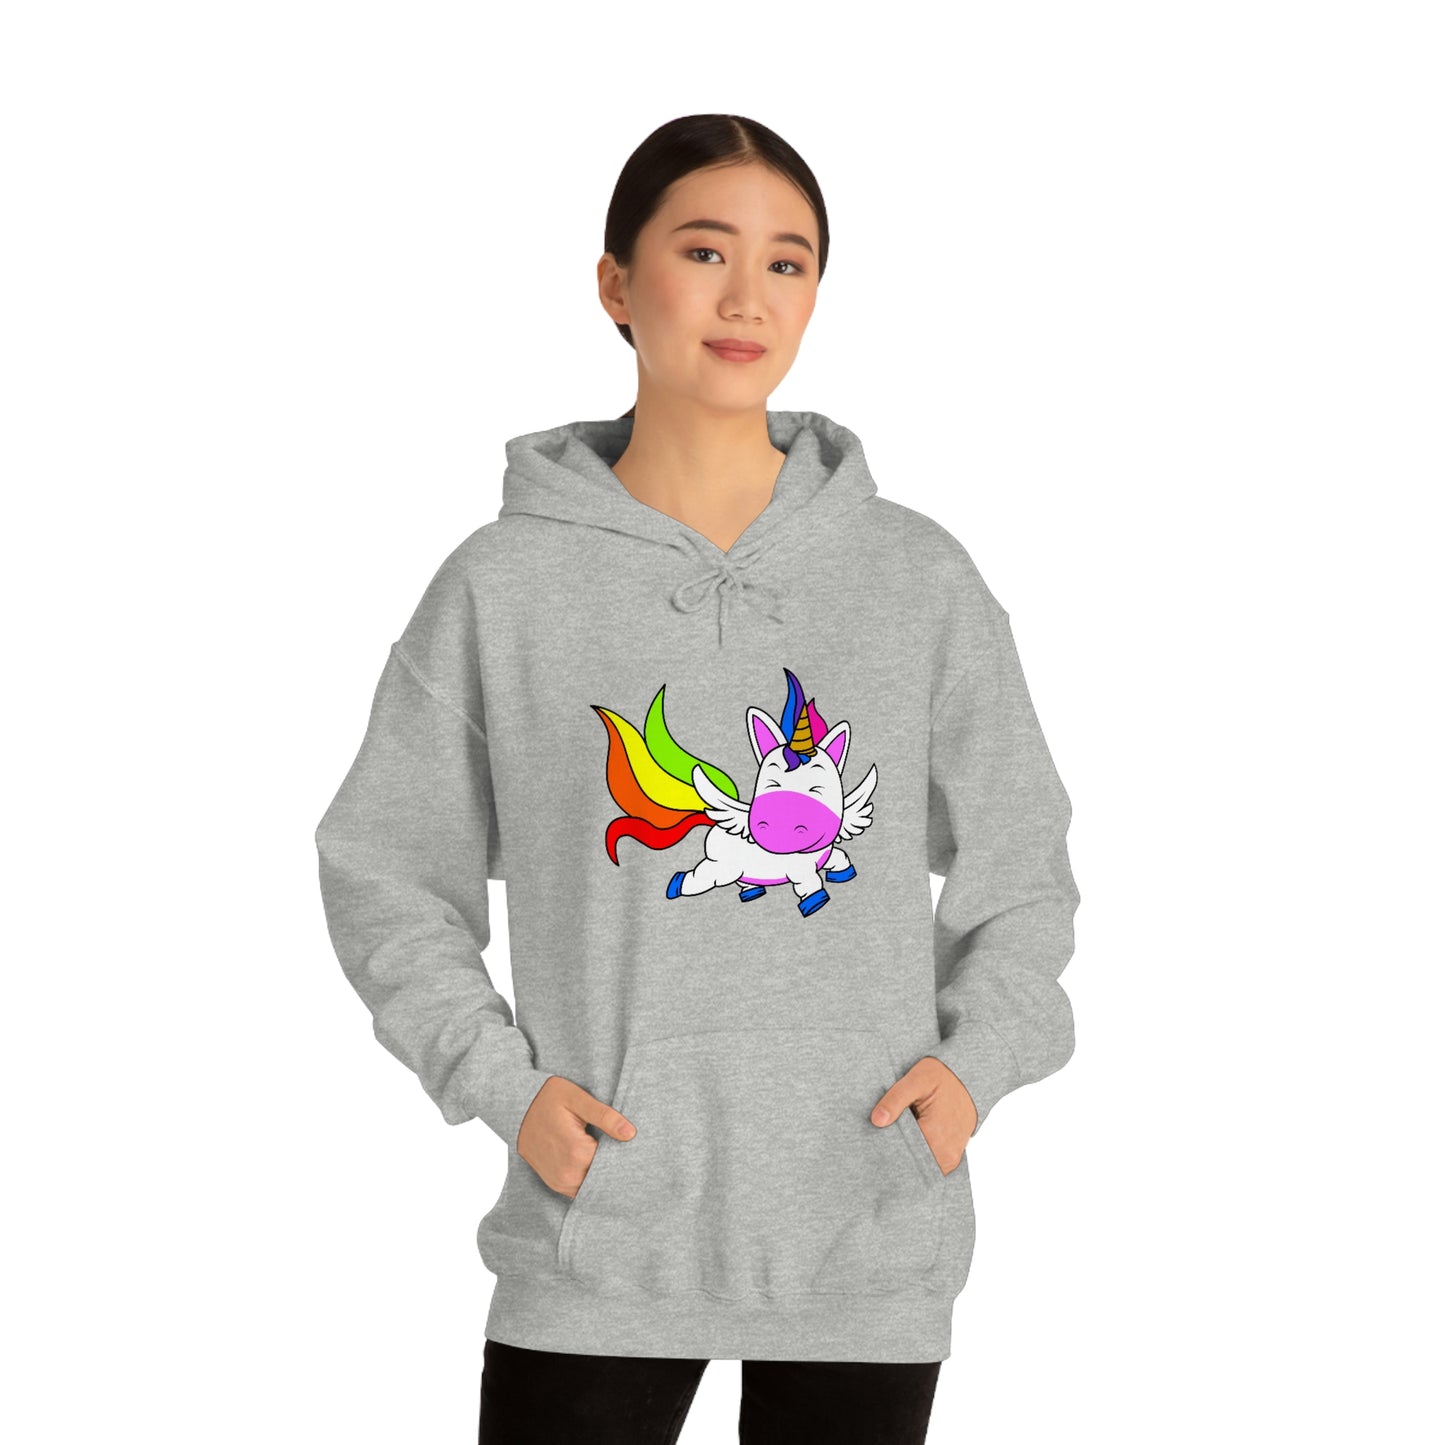 Magical Rainbow Unicorn Hooded Sweatshirt